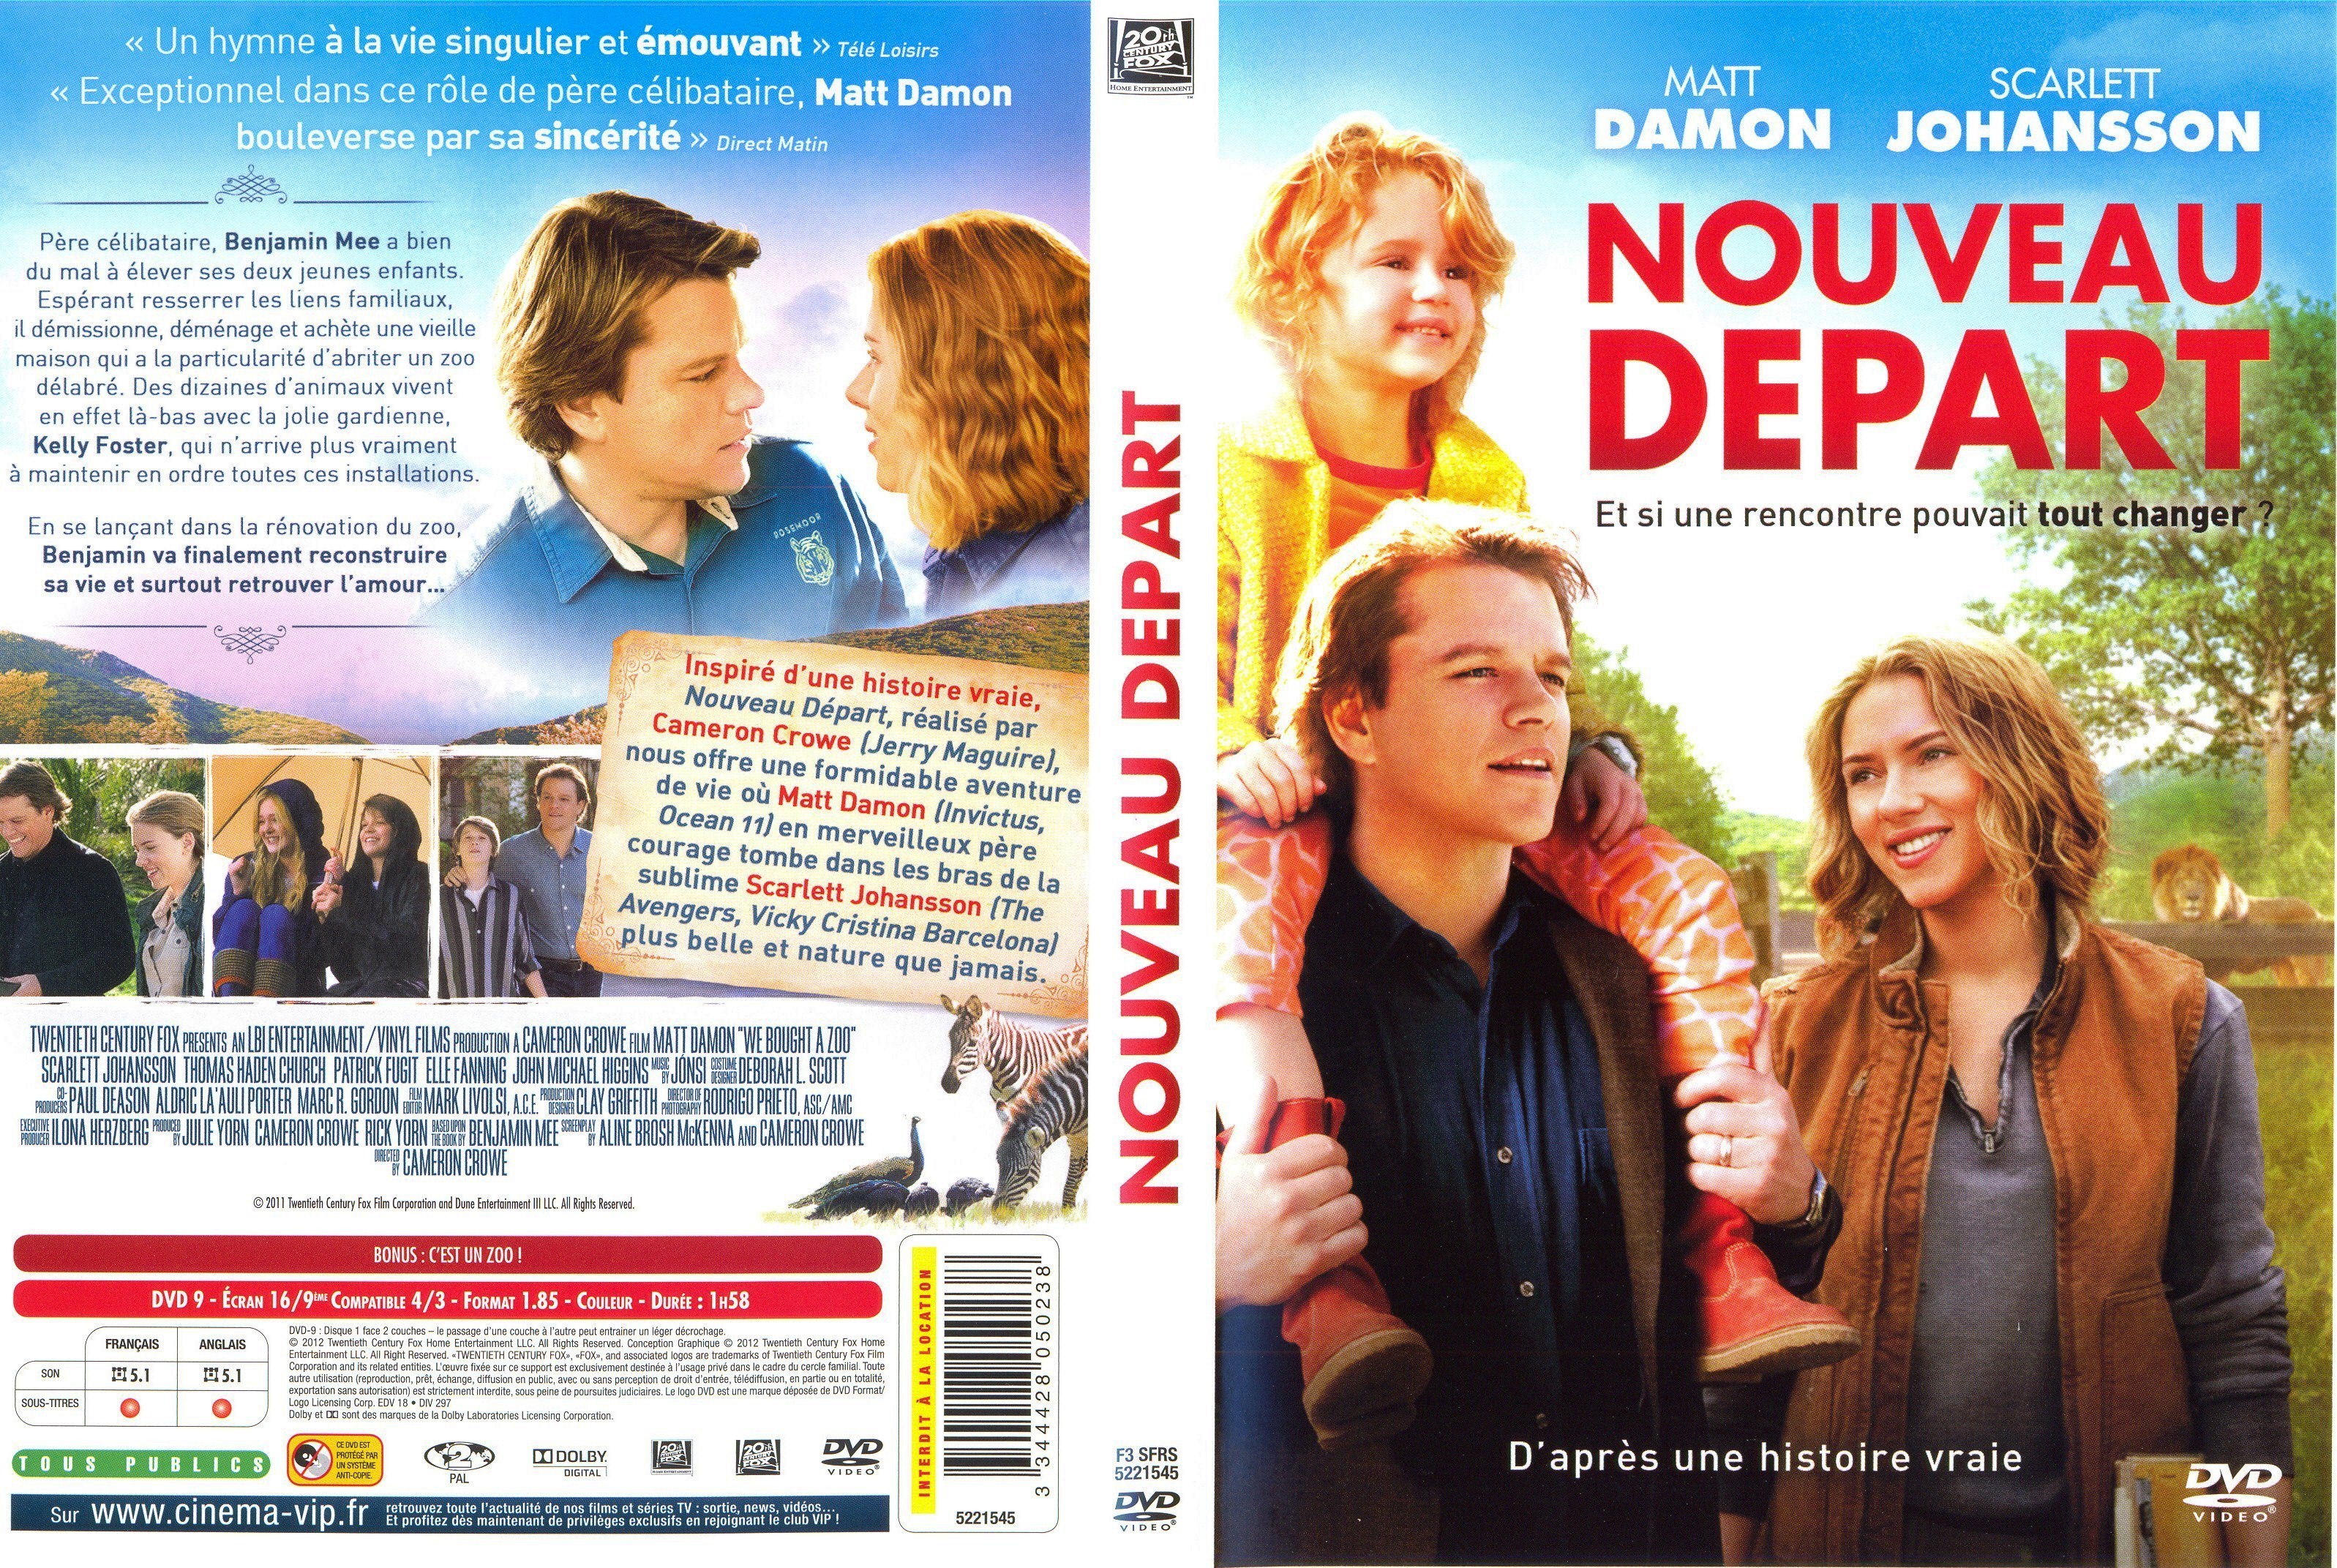 Jaquette DVD Nouveau Dpart